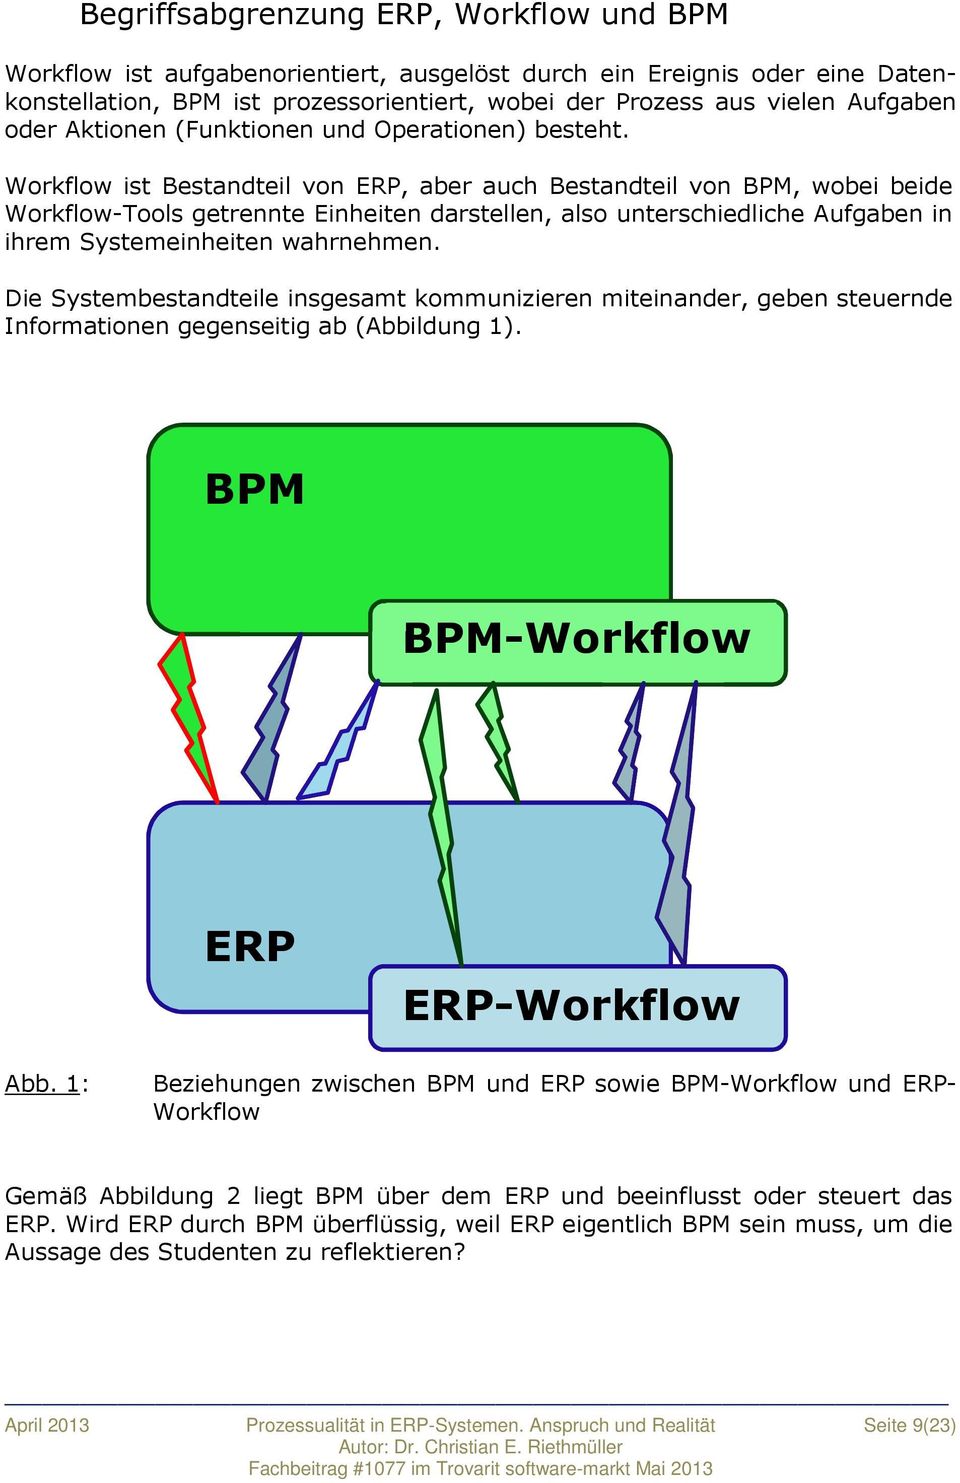 Workflow ist Bestandteil von ERP, aber auch Bestandteil von BPM, wobei beide Workflow-Tools getrennte Einheiten darstellen, also unterschiedliche Aufgaben in ihrem Systemeinheiten wahrnehmen.